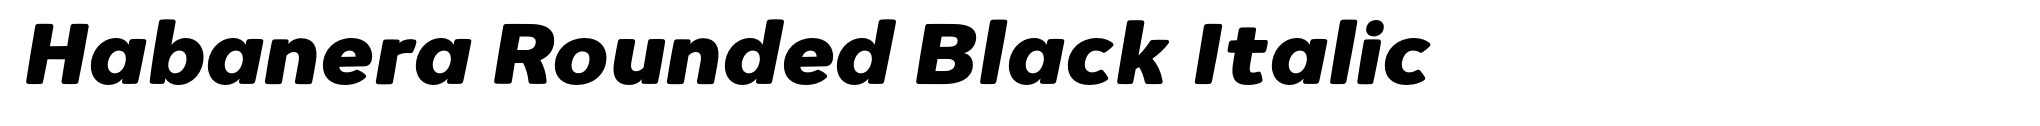 Habanera Rounded Black Italic image